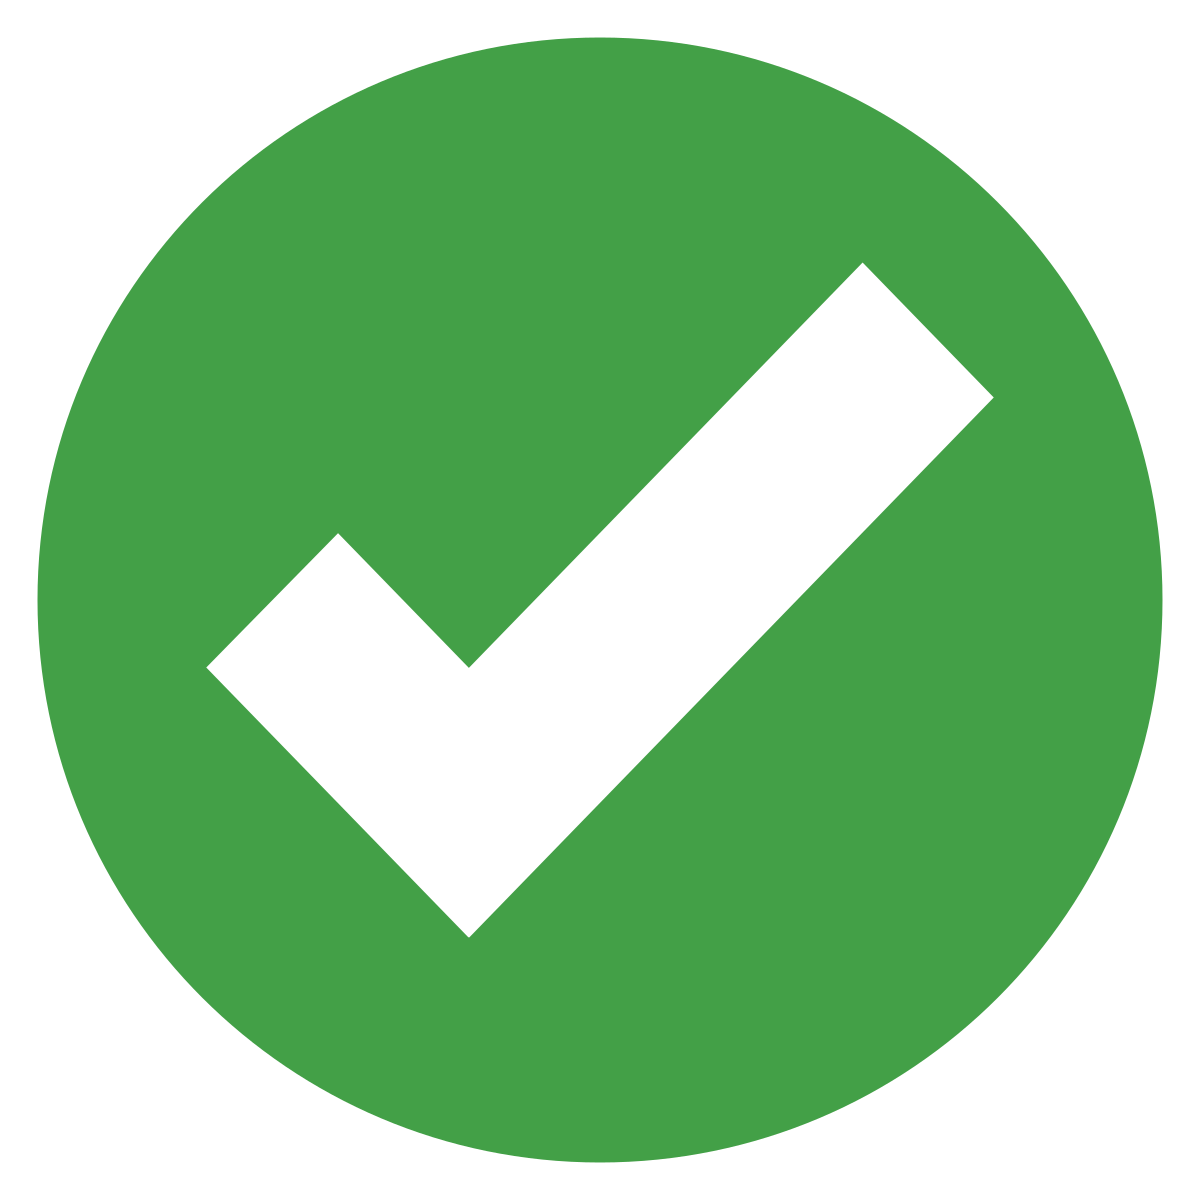 Compatibility checkmark symbol